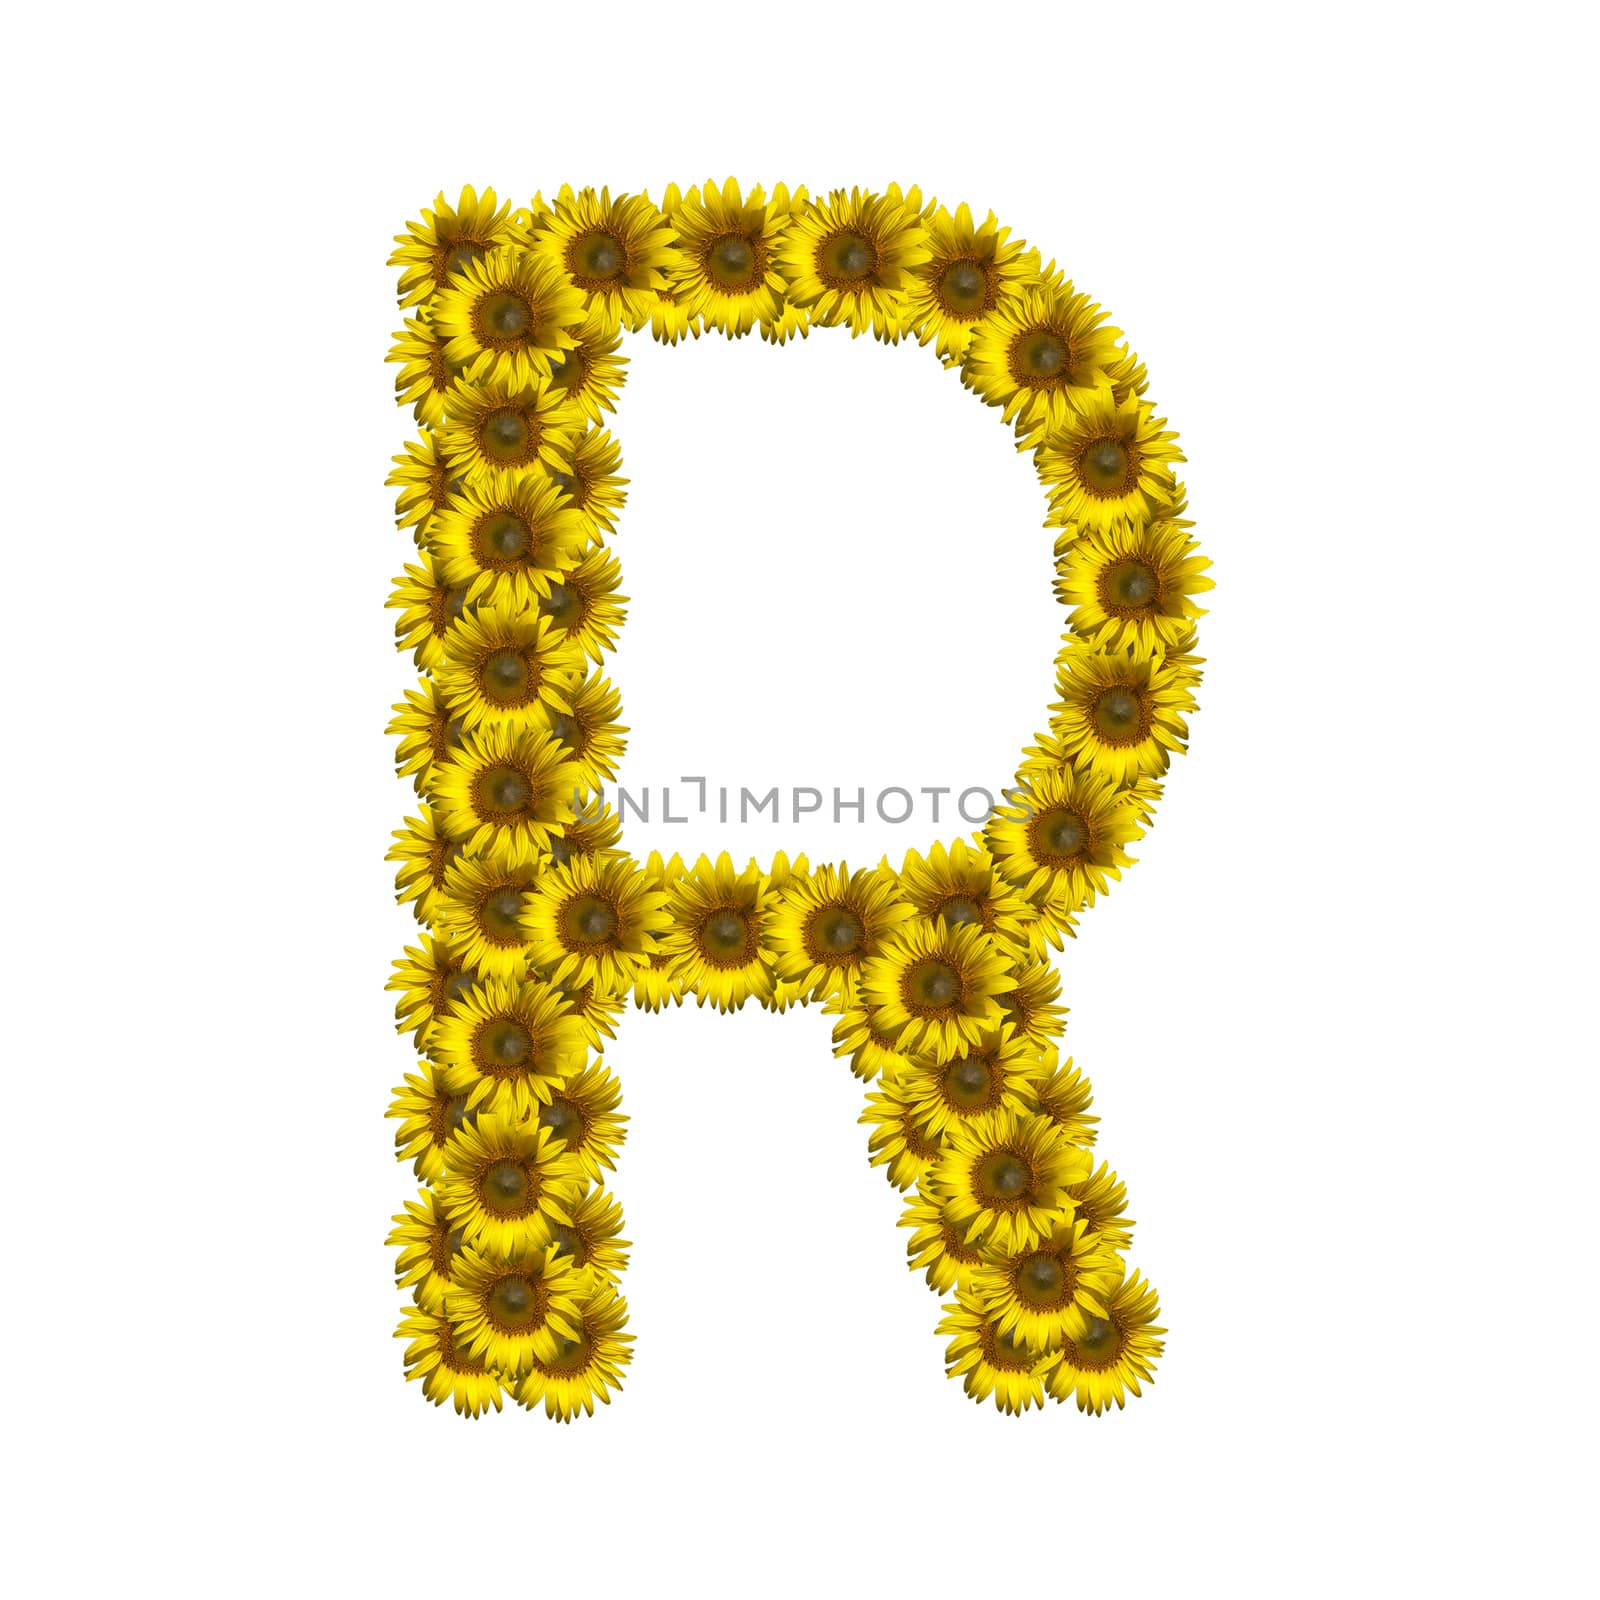 Isolated sunflower alphabet R by Exsodus